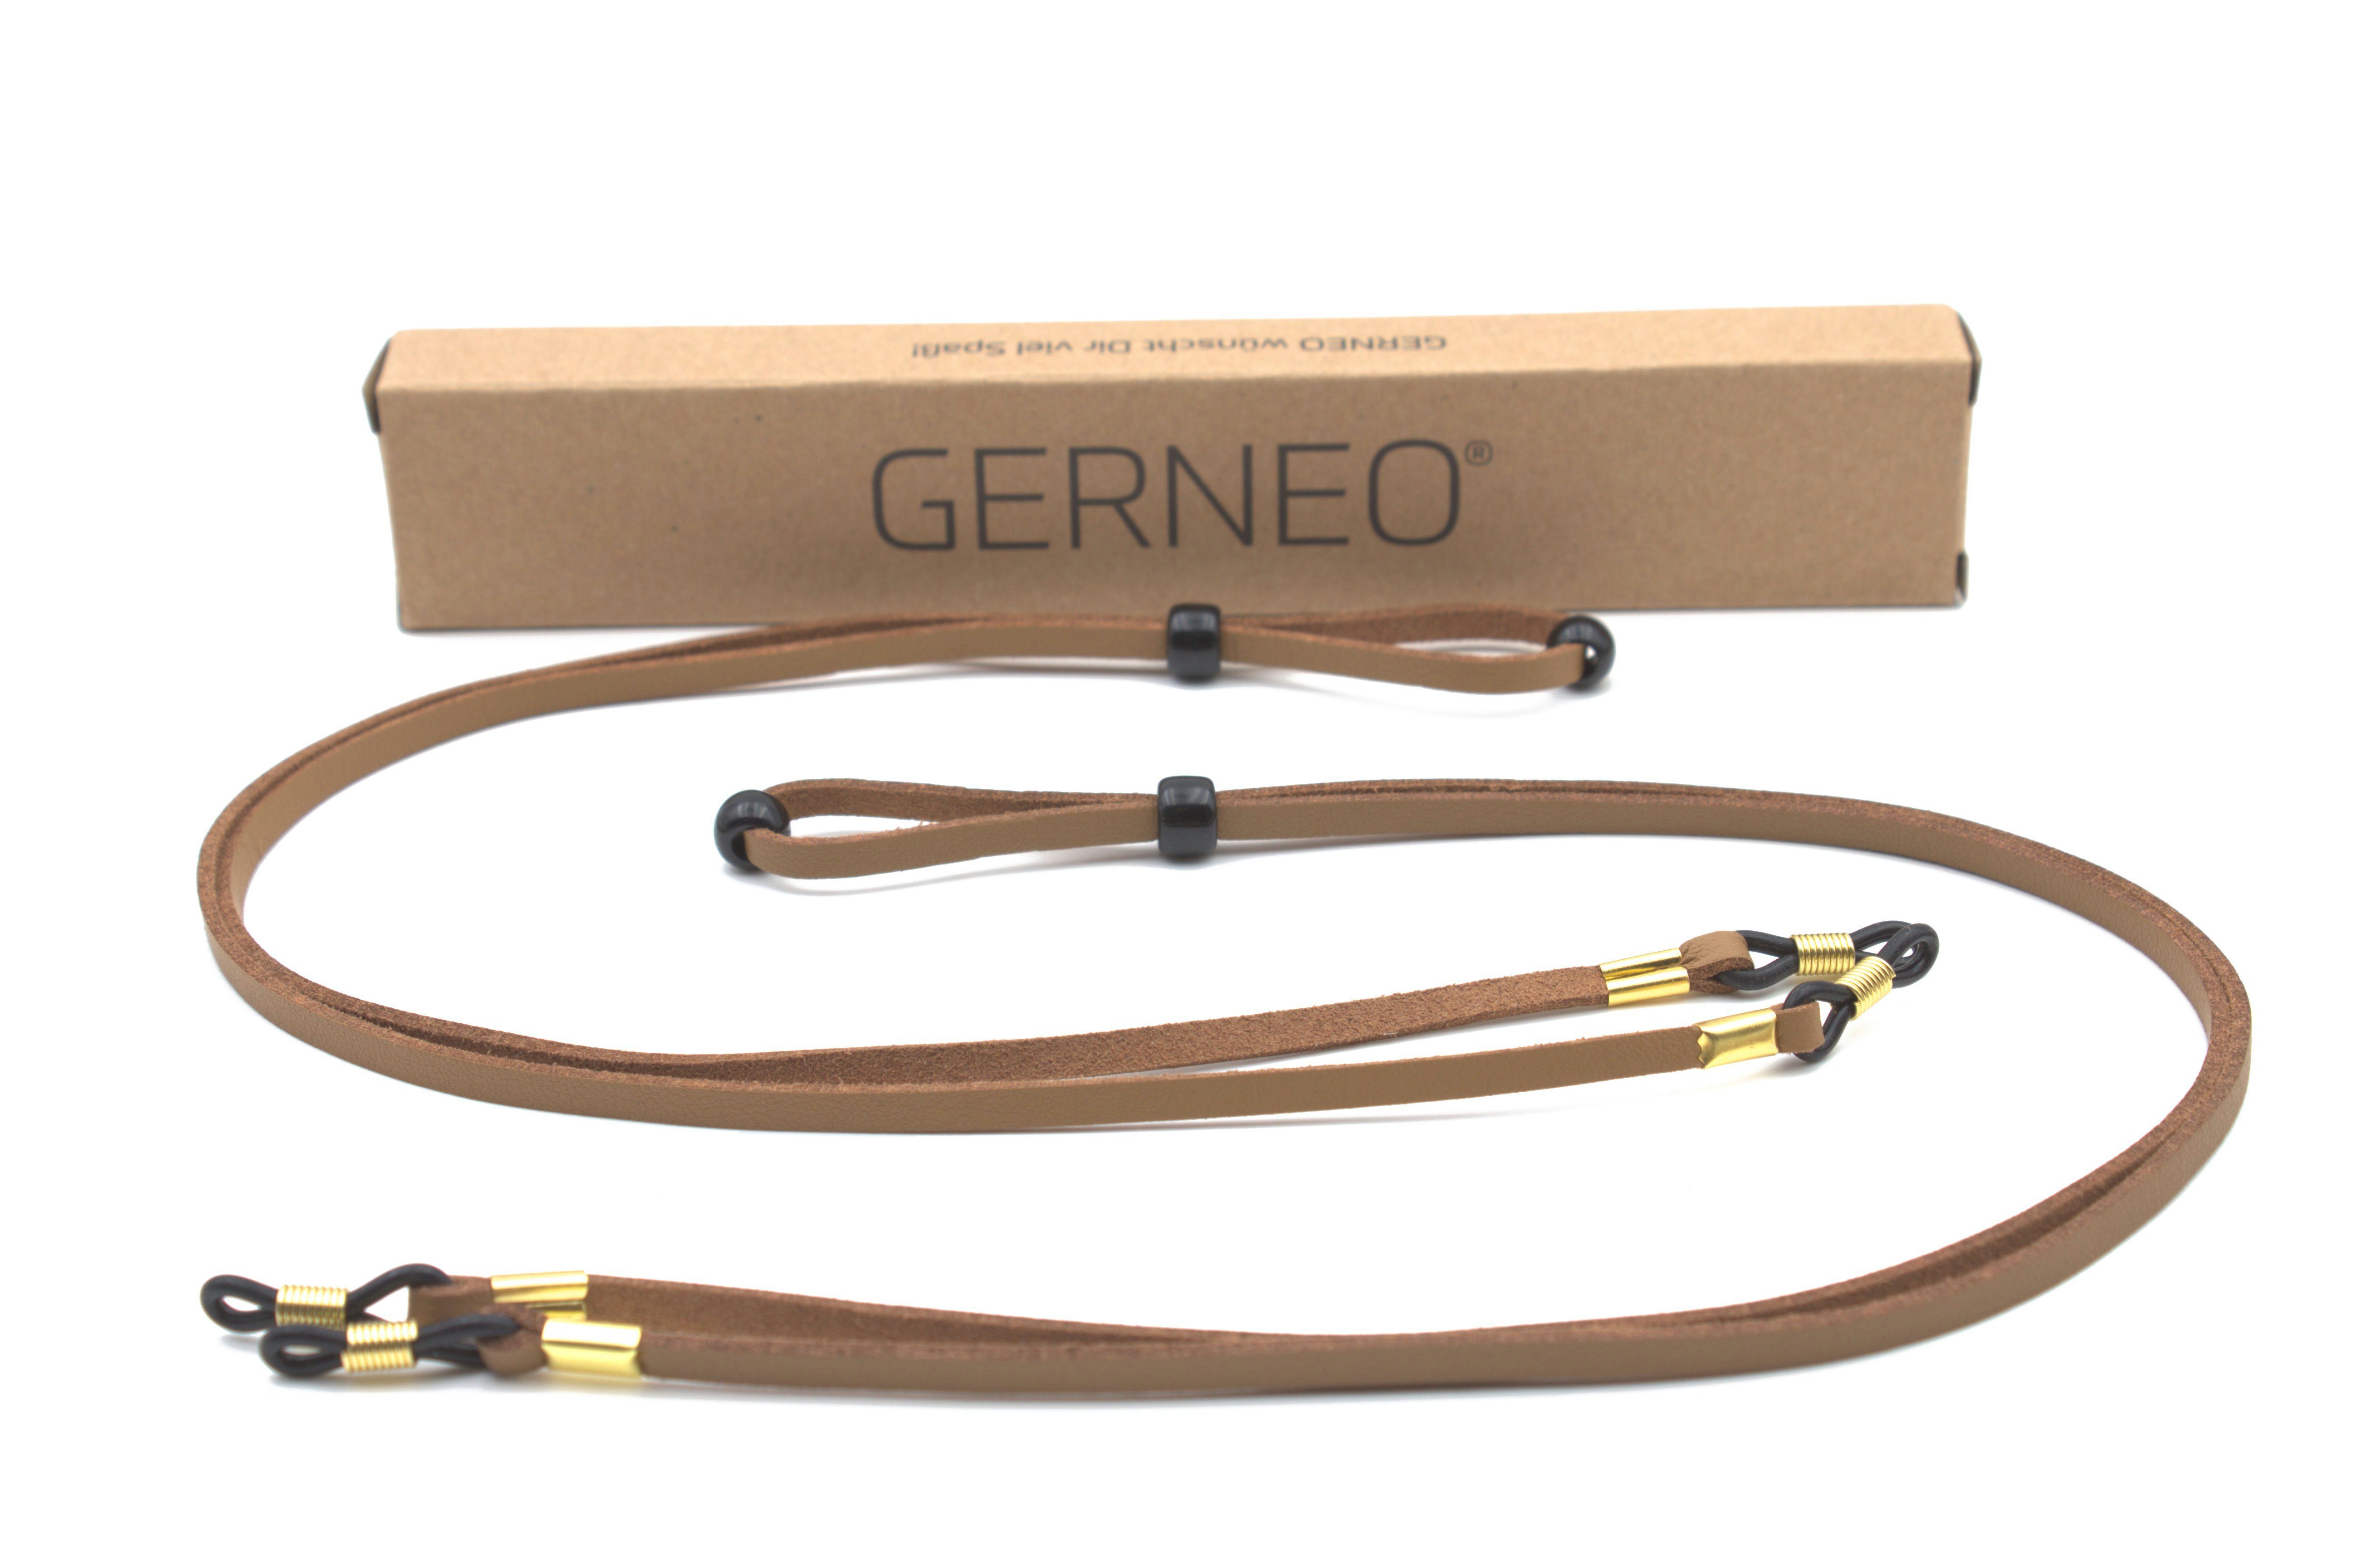 GERNEO Brillenband GERNEO® - Bilbao – hochwertiges Brillenband Leder- & Wildlederoptik, PU Brillenkordel – Band schwarz & hellbraun – Halterungen gold 2x-Braun